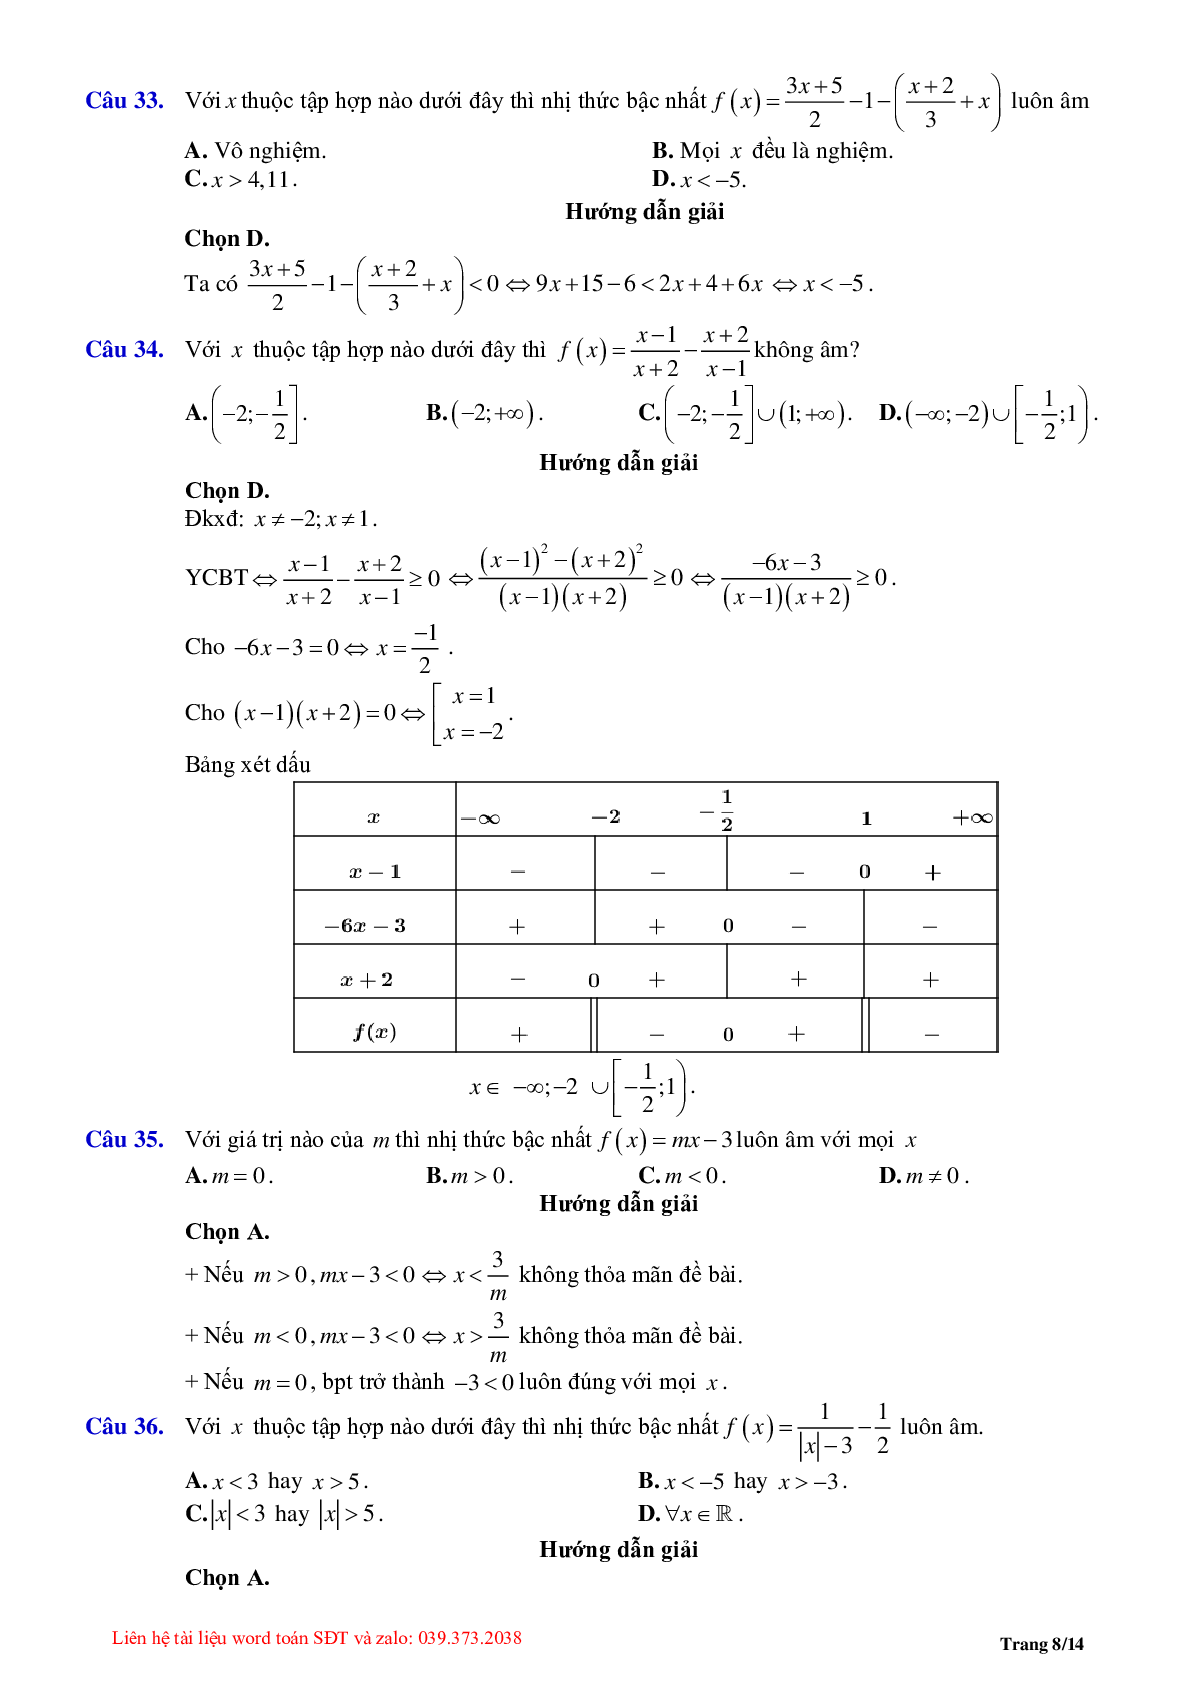 Chuyên đề dấu của nhị thức bậc nhất (trang 8)